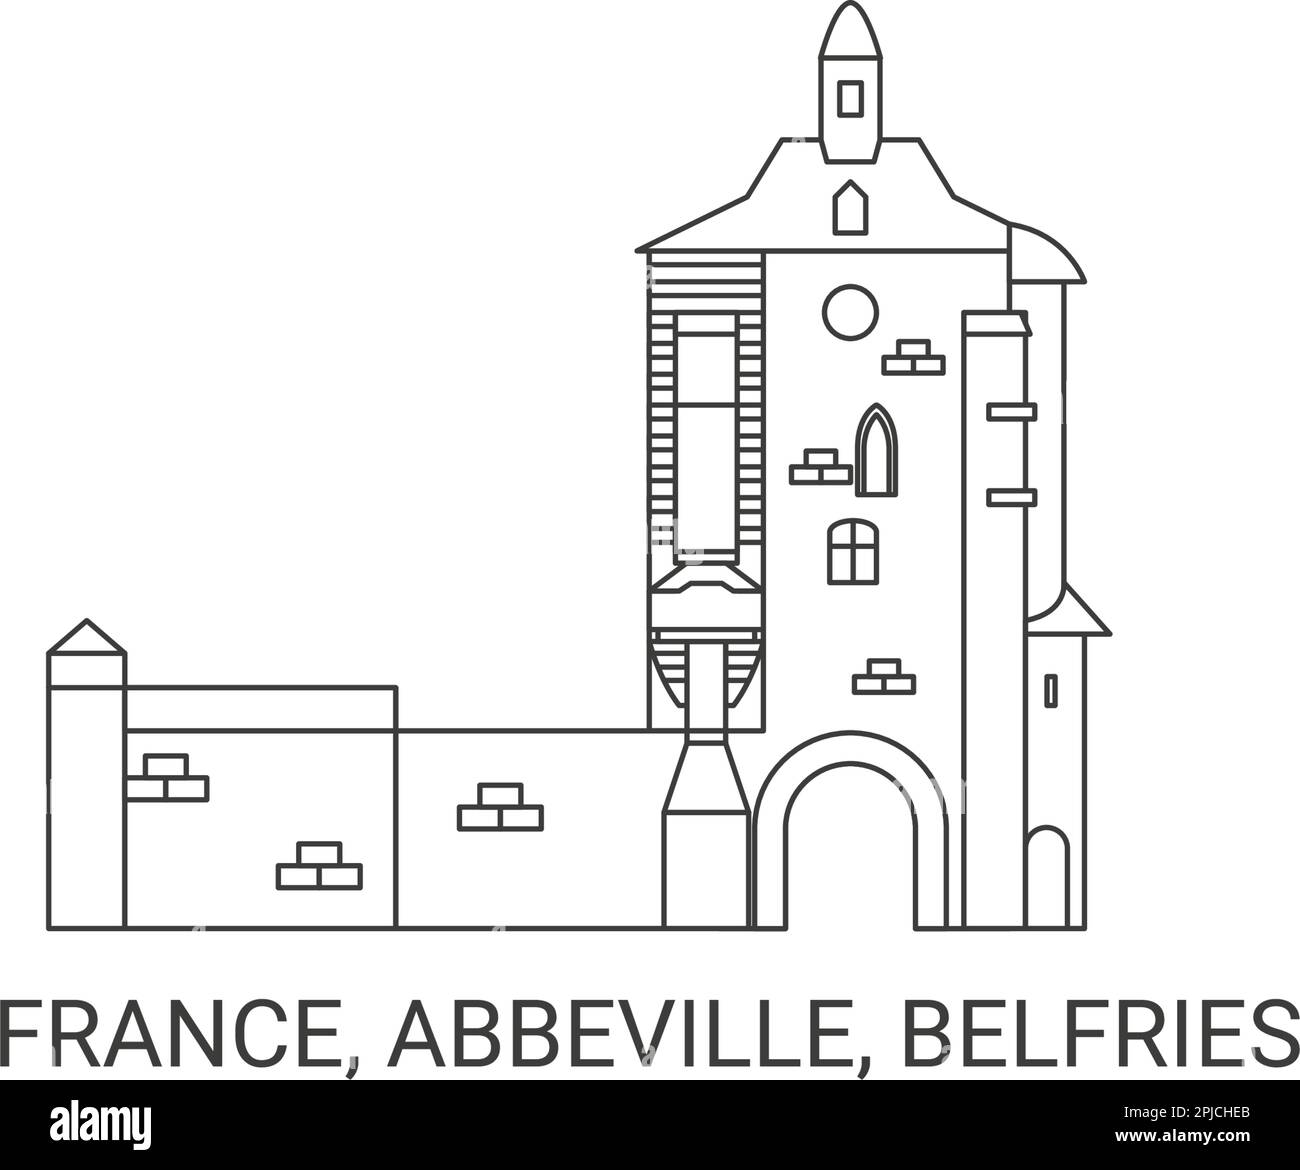 France, Abbeville, Belfries travel landmark vector illustration Stock Vector